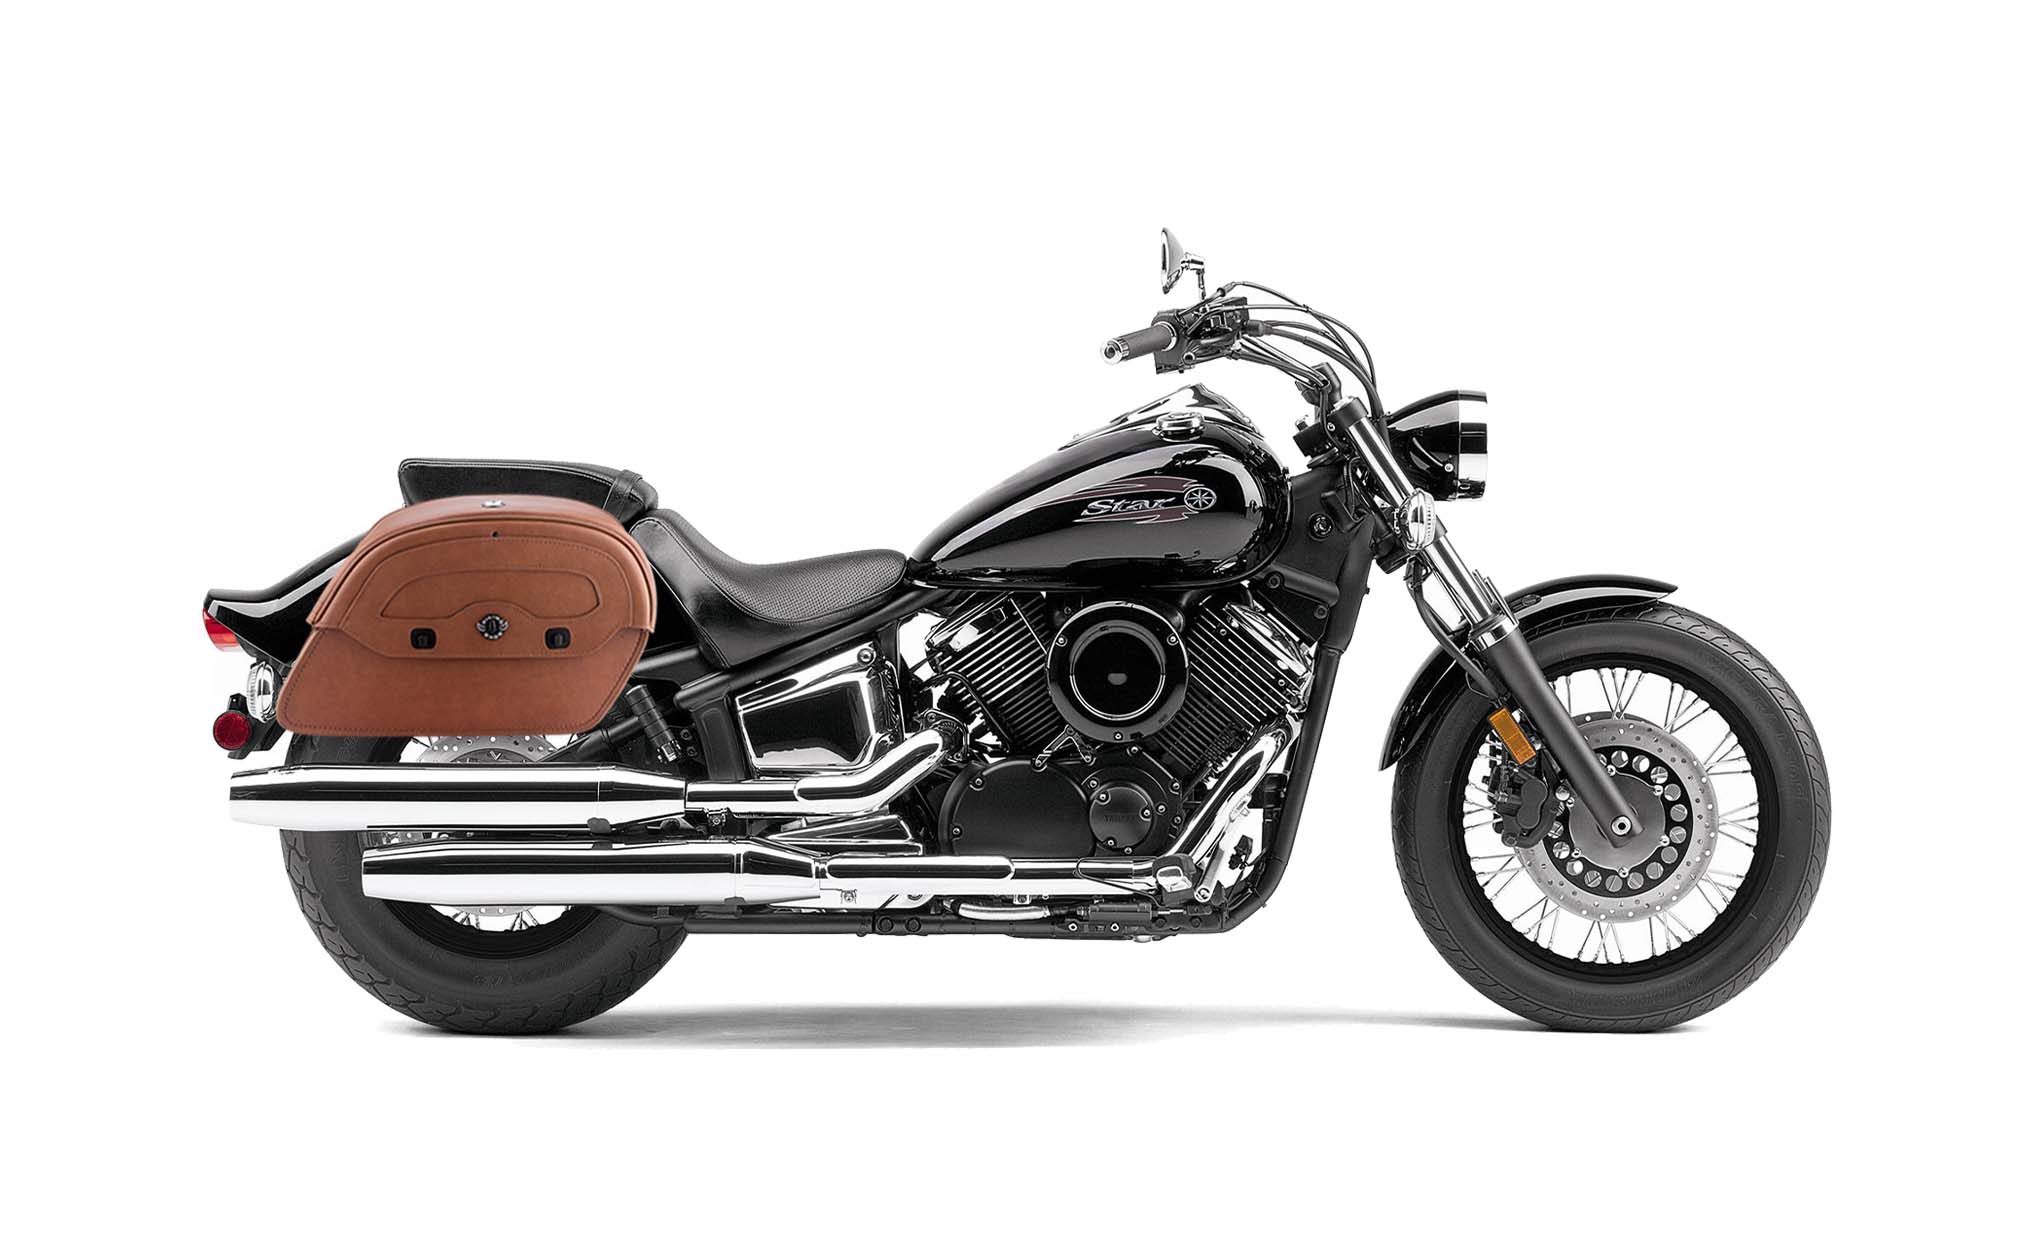 Viking Warrior Brown Large Yamaha V Star 1100 Custom Xvs11T Leather Motorcycle Saddlebags on Bike Photo @expand